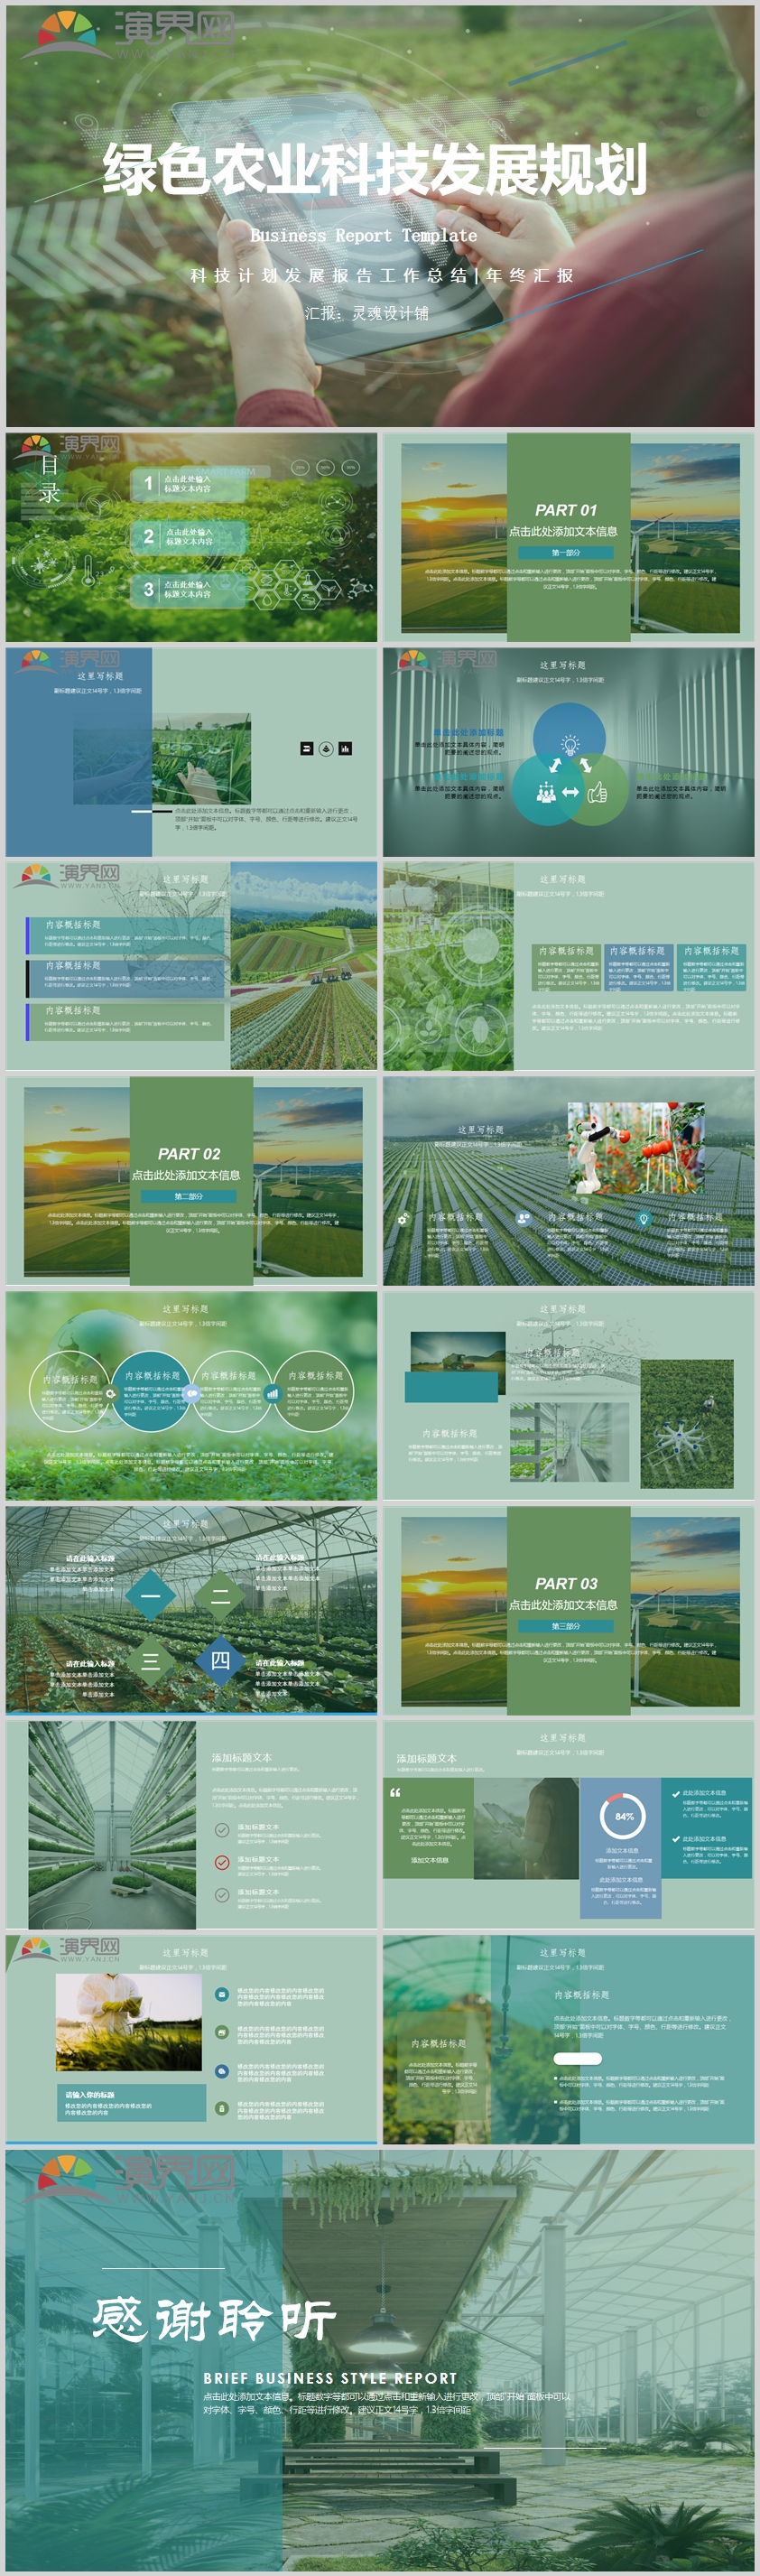 绿色农业科技发展规划汇报